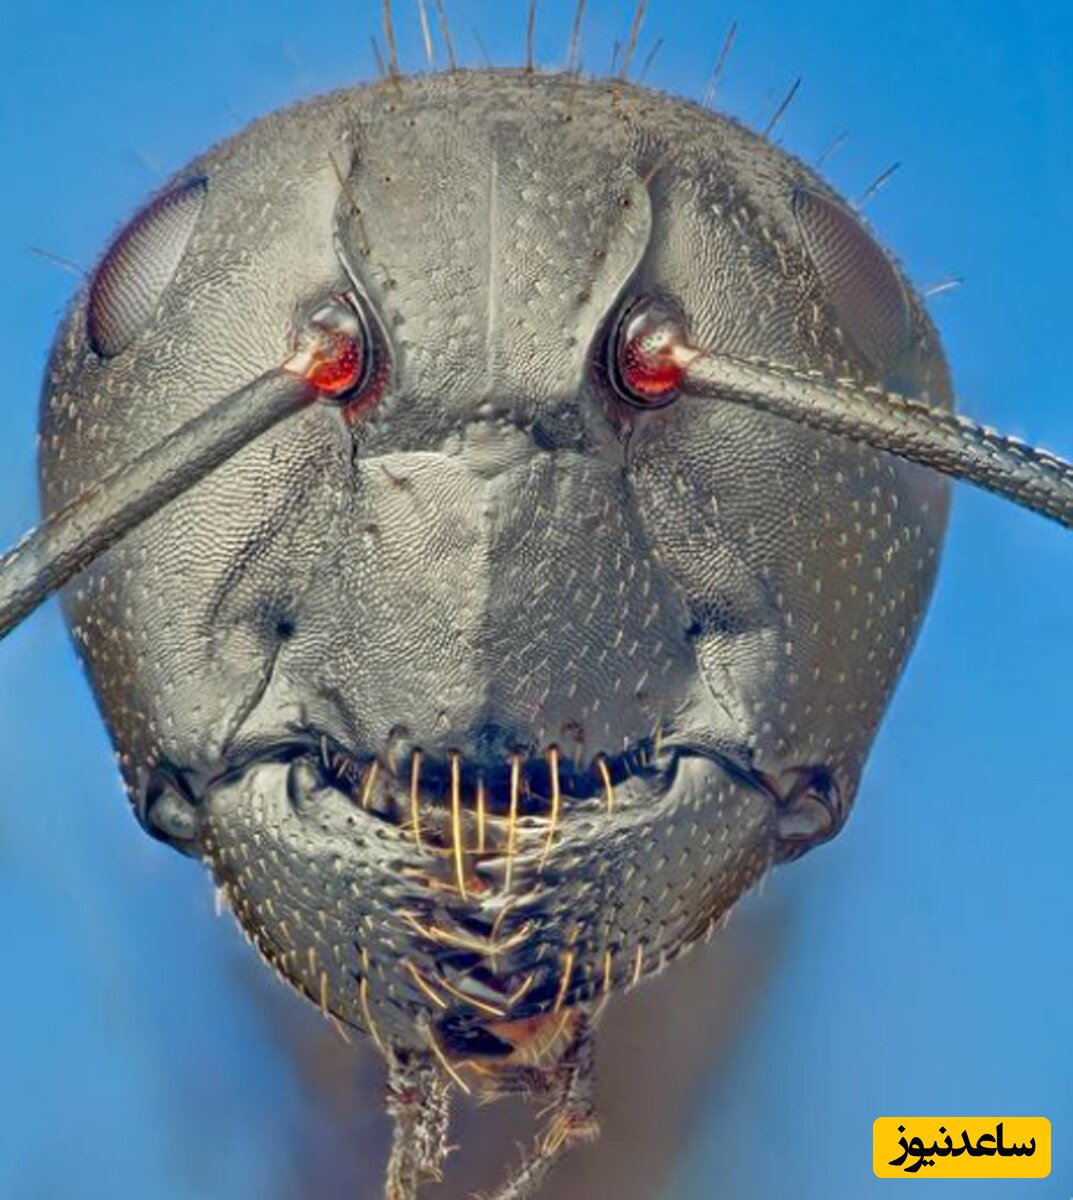 عکس چهره فوق العاده ترسناک مورچه از نمای نزدیک زیر میکروسکوپ چقد خوبه که چهرشو نمی بینیم 2996